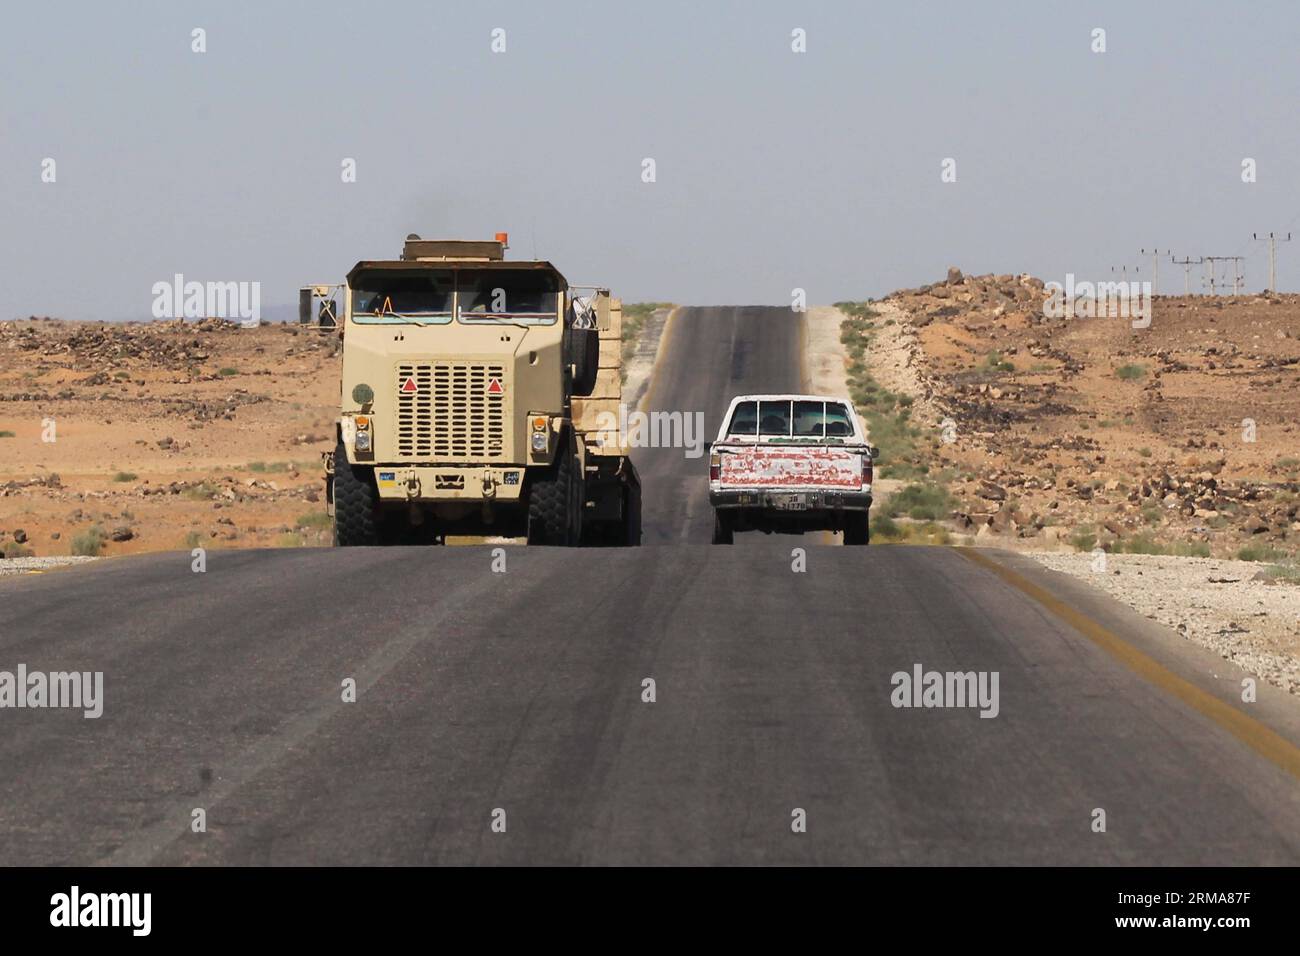 (140624) -- ATTRAVERSAMENTO DI AL KARAMAH, 24 giugno 2014 (Xinhua) -- Un veicolo militare giordano è visto vicino ad al Karamah Crossing sul confine tra Iraq e Giordania, il 23 giugno 2014. Lunedì la Giordania ha iniziato a mobilitare le forze lungo il confine con l'Iraq per evitare infiltrazioni di militanti sunniti in un peggioramento della situazione della sicurezza in Iraq. (Xinhua/Mohammad Abu Ghosh) (zjl) JORDAN-AL KARAMAH CROSSING-IRAQ-PREVENTION PUBLICATIONxNOTxINxCHN al Crossing 24 giugno 2014 XINHUA un veicolo militare giordano È Lakes near al Crossing ON Iraq Jordan border IL 23 giugno 2014 la Giordania ha iniziato a mobilitare le forze lunedì Foto Stock